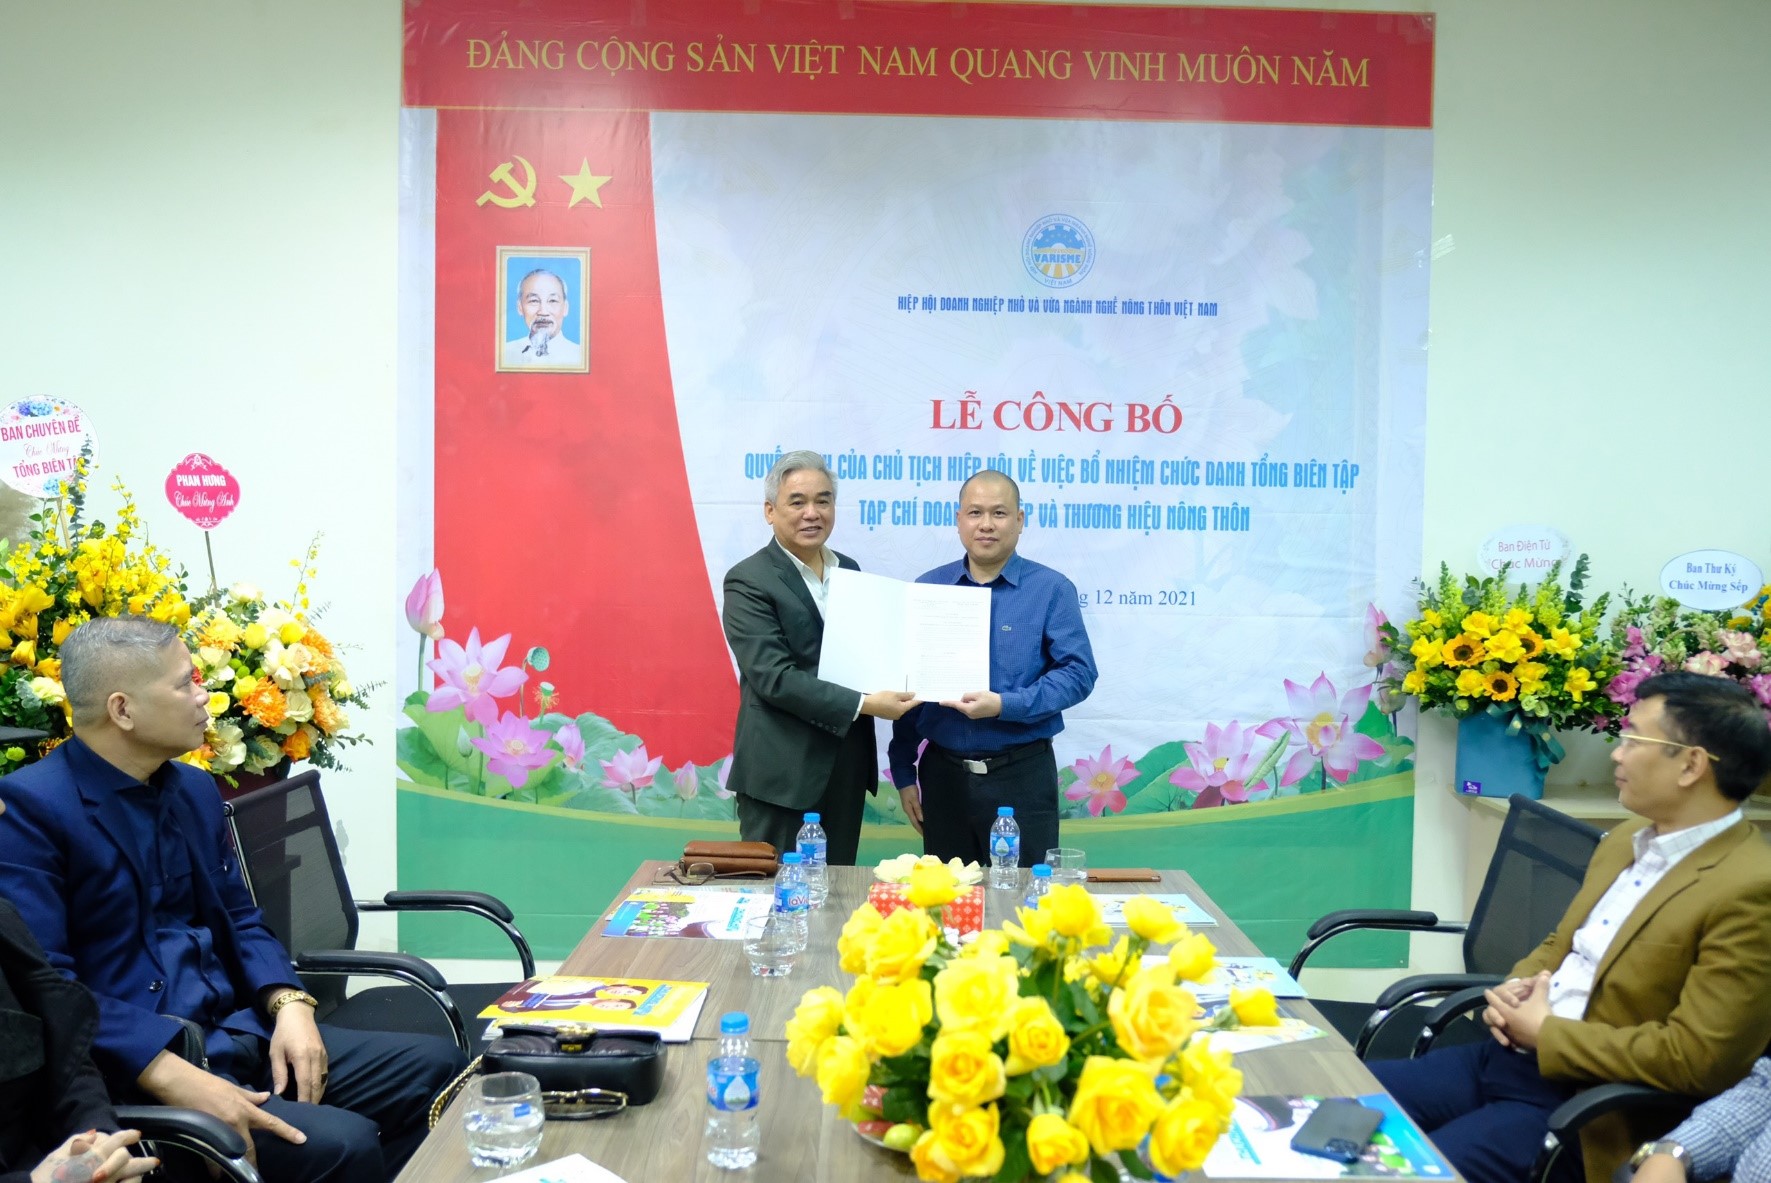 Nhà báo Nguyễn Nam Thắng được bổ nhiệm giữ chức Tổng Biên tập Tạp chí Doanh nghiệp và Thương hiệu nông thôn